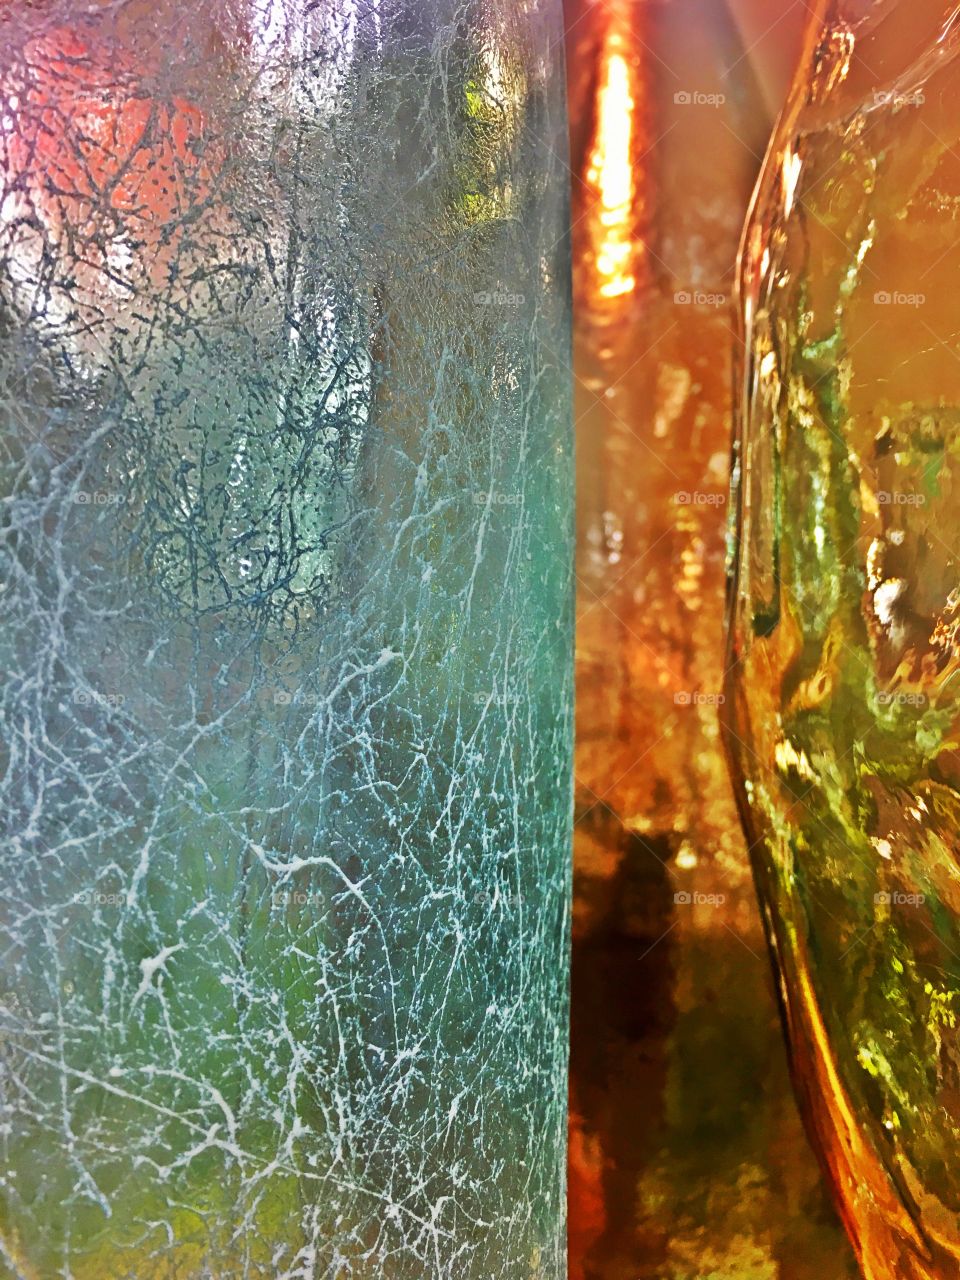 Glass 